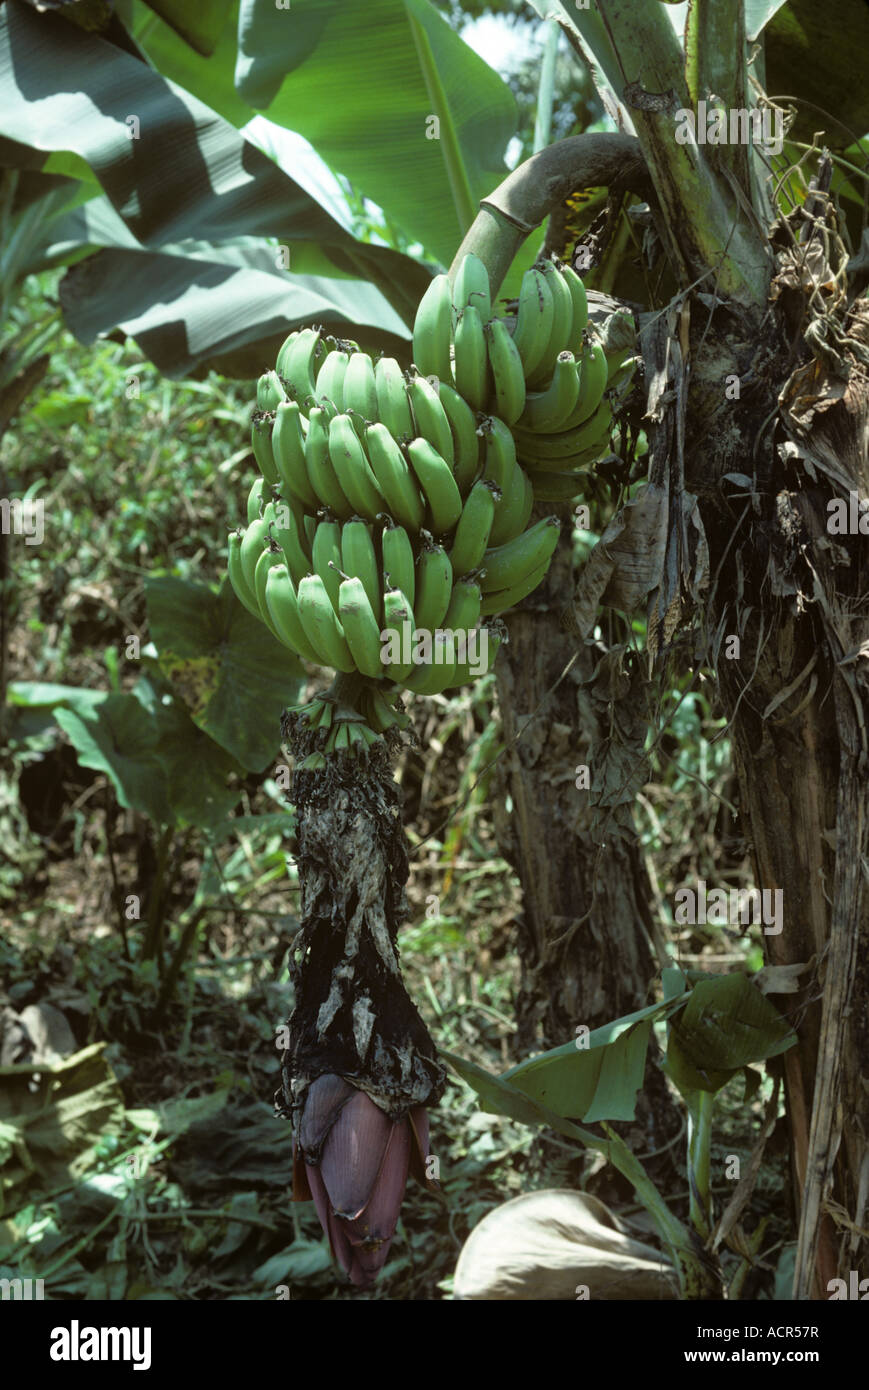 Bananenbaum infiziert mit schwarzem Blatt Streifen Krankheit Mycosphaerella Fijiensis Kolumbien Stockfoto